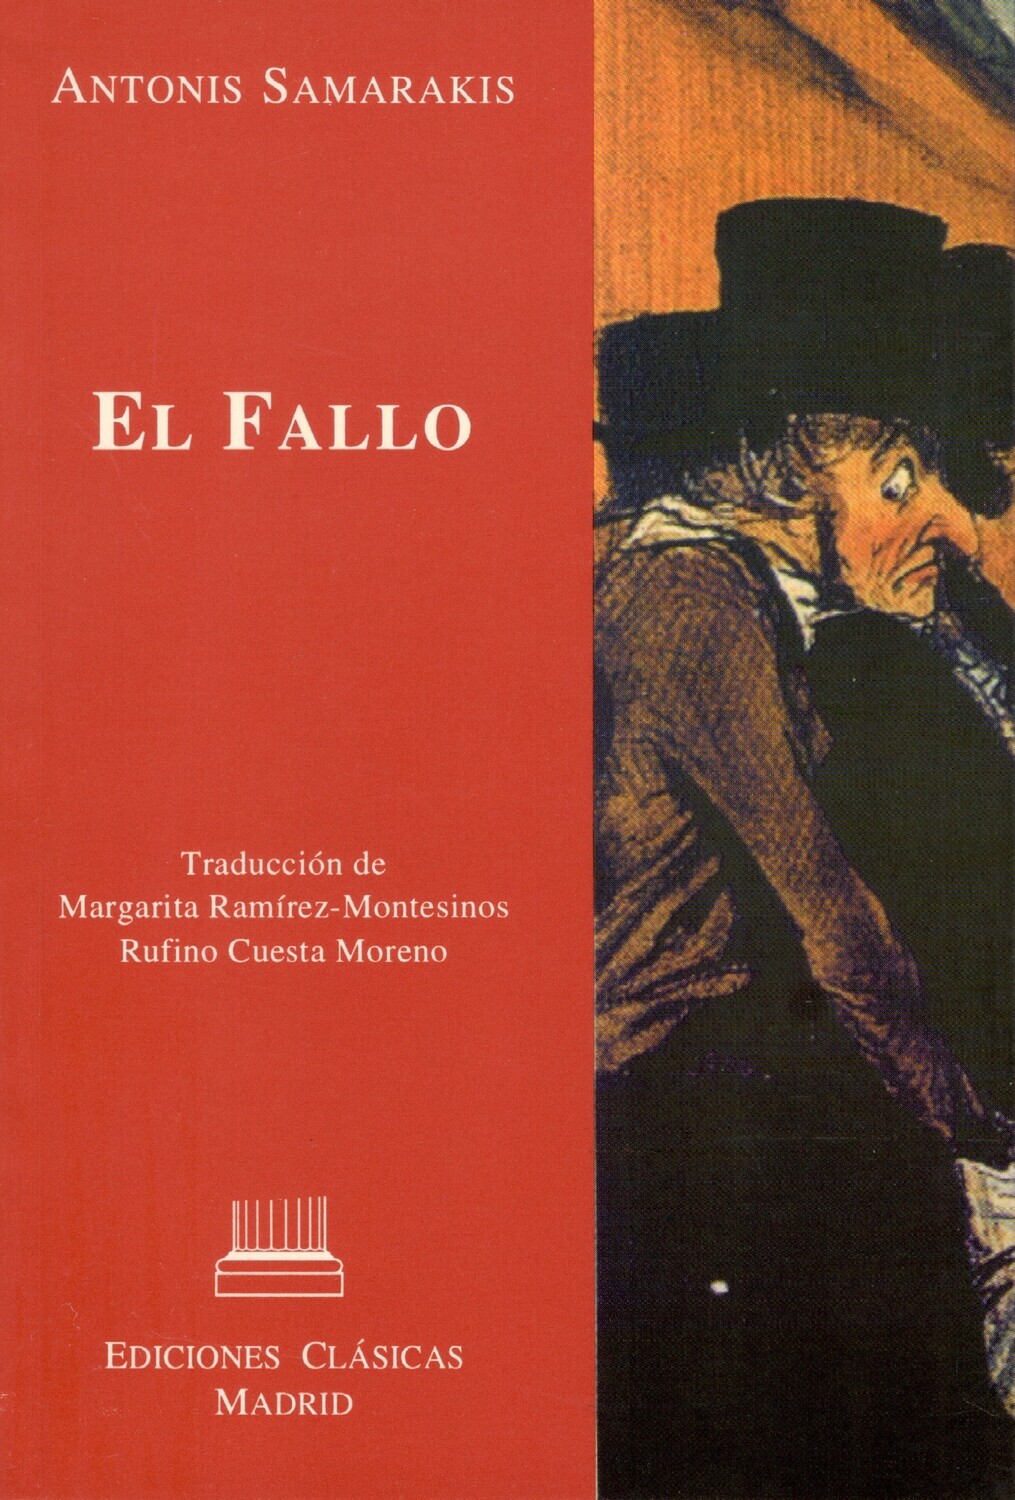 EL FALLO (ANTONIS SAMARAKIS)